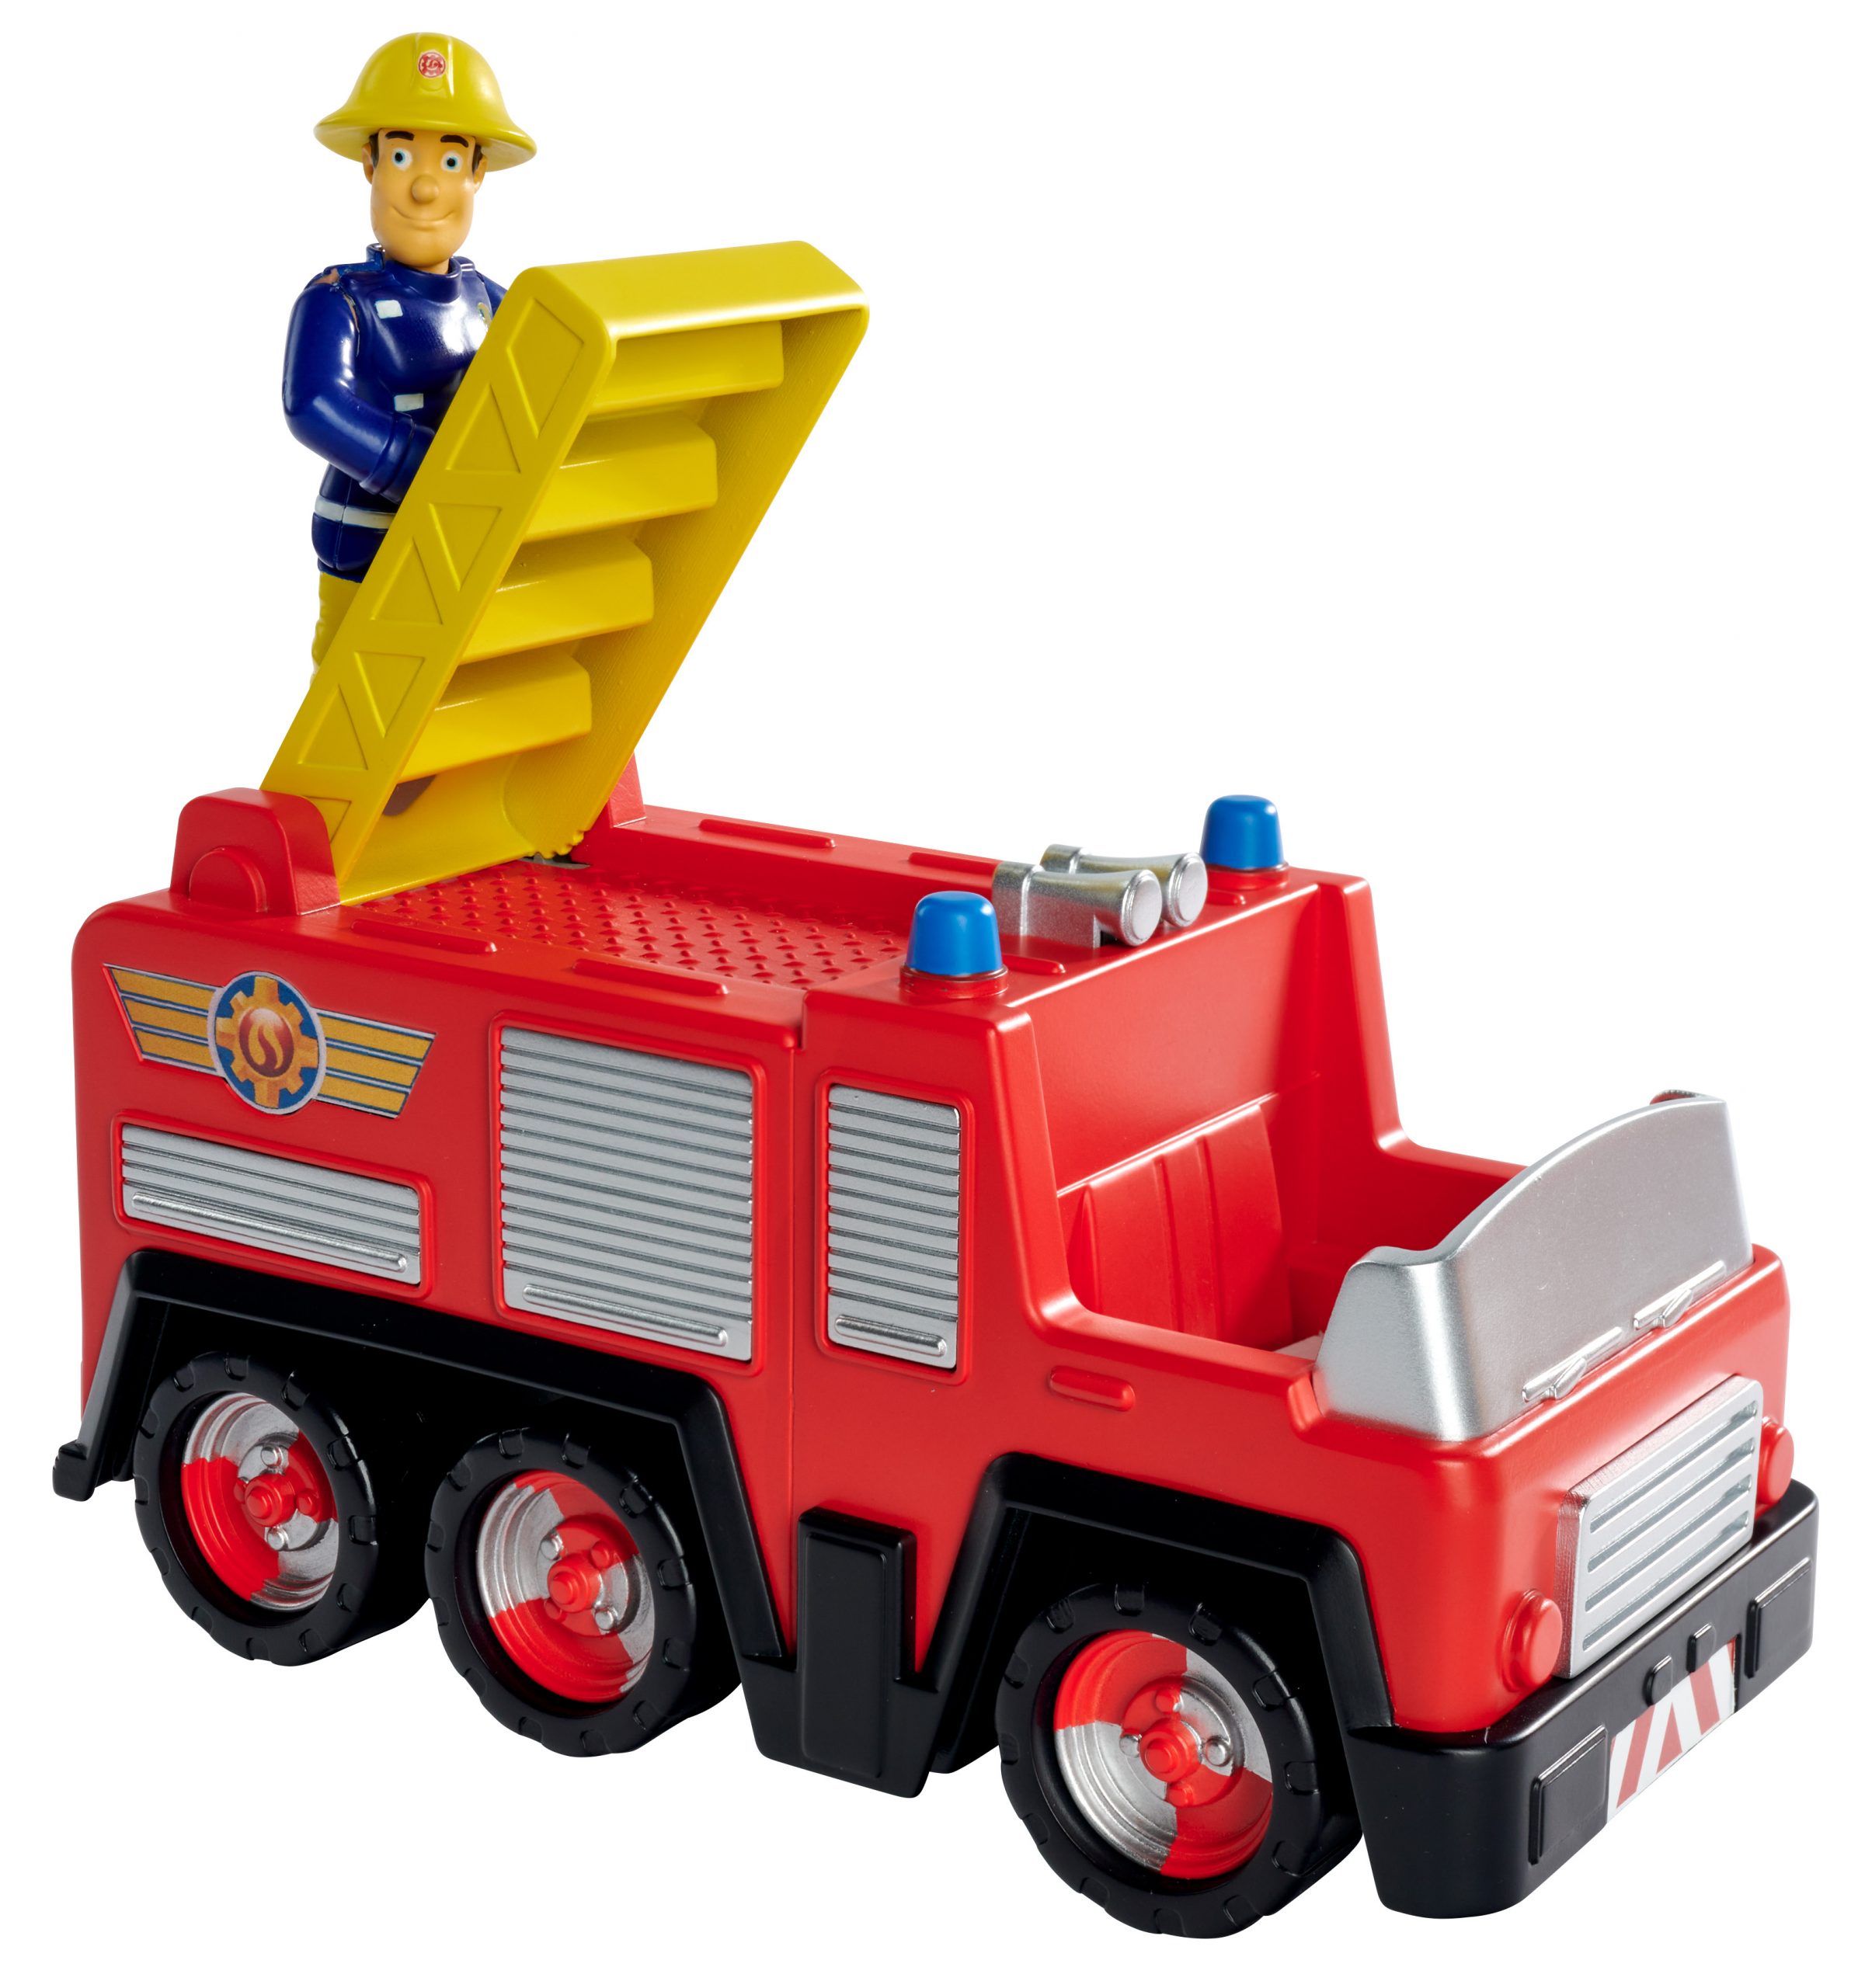 Sam camion jupiter con personaggio sam - Toys Center